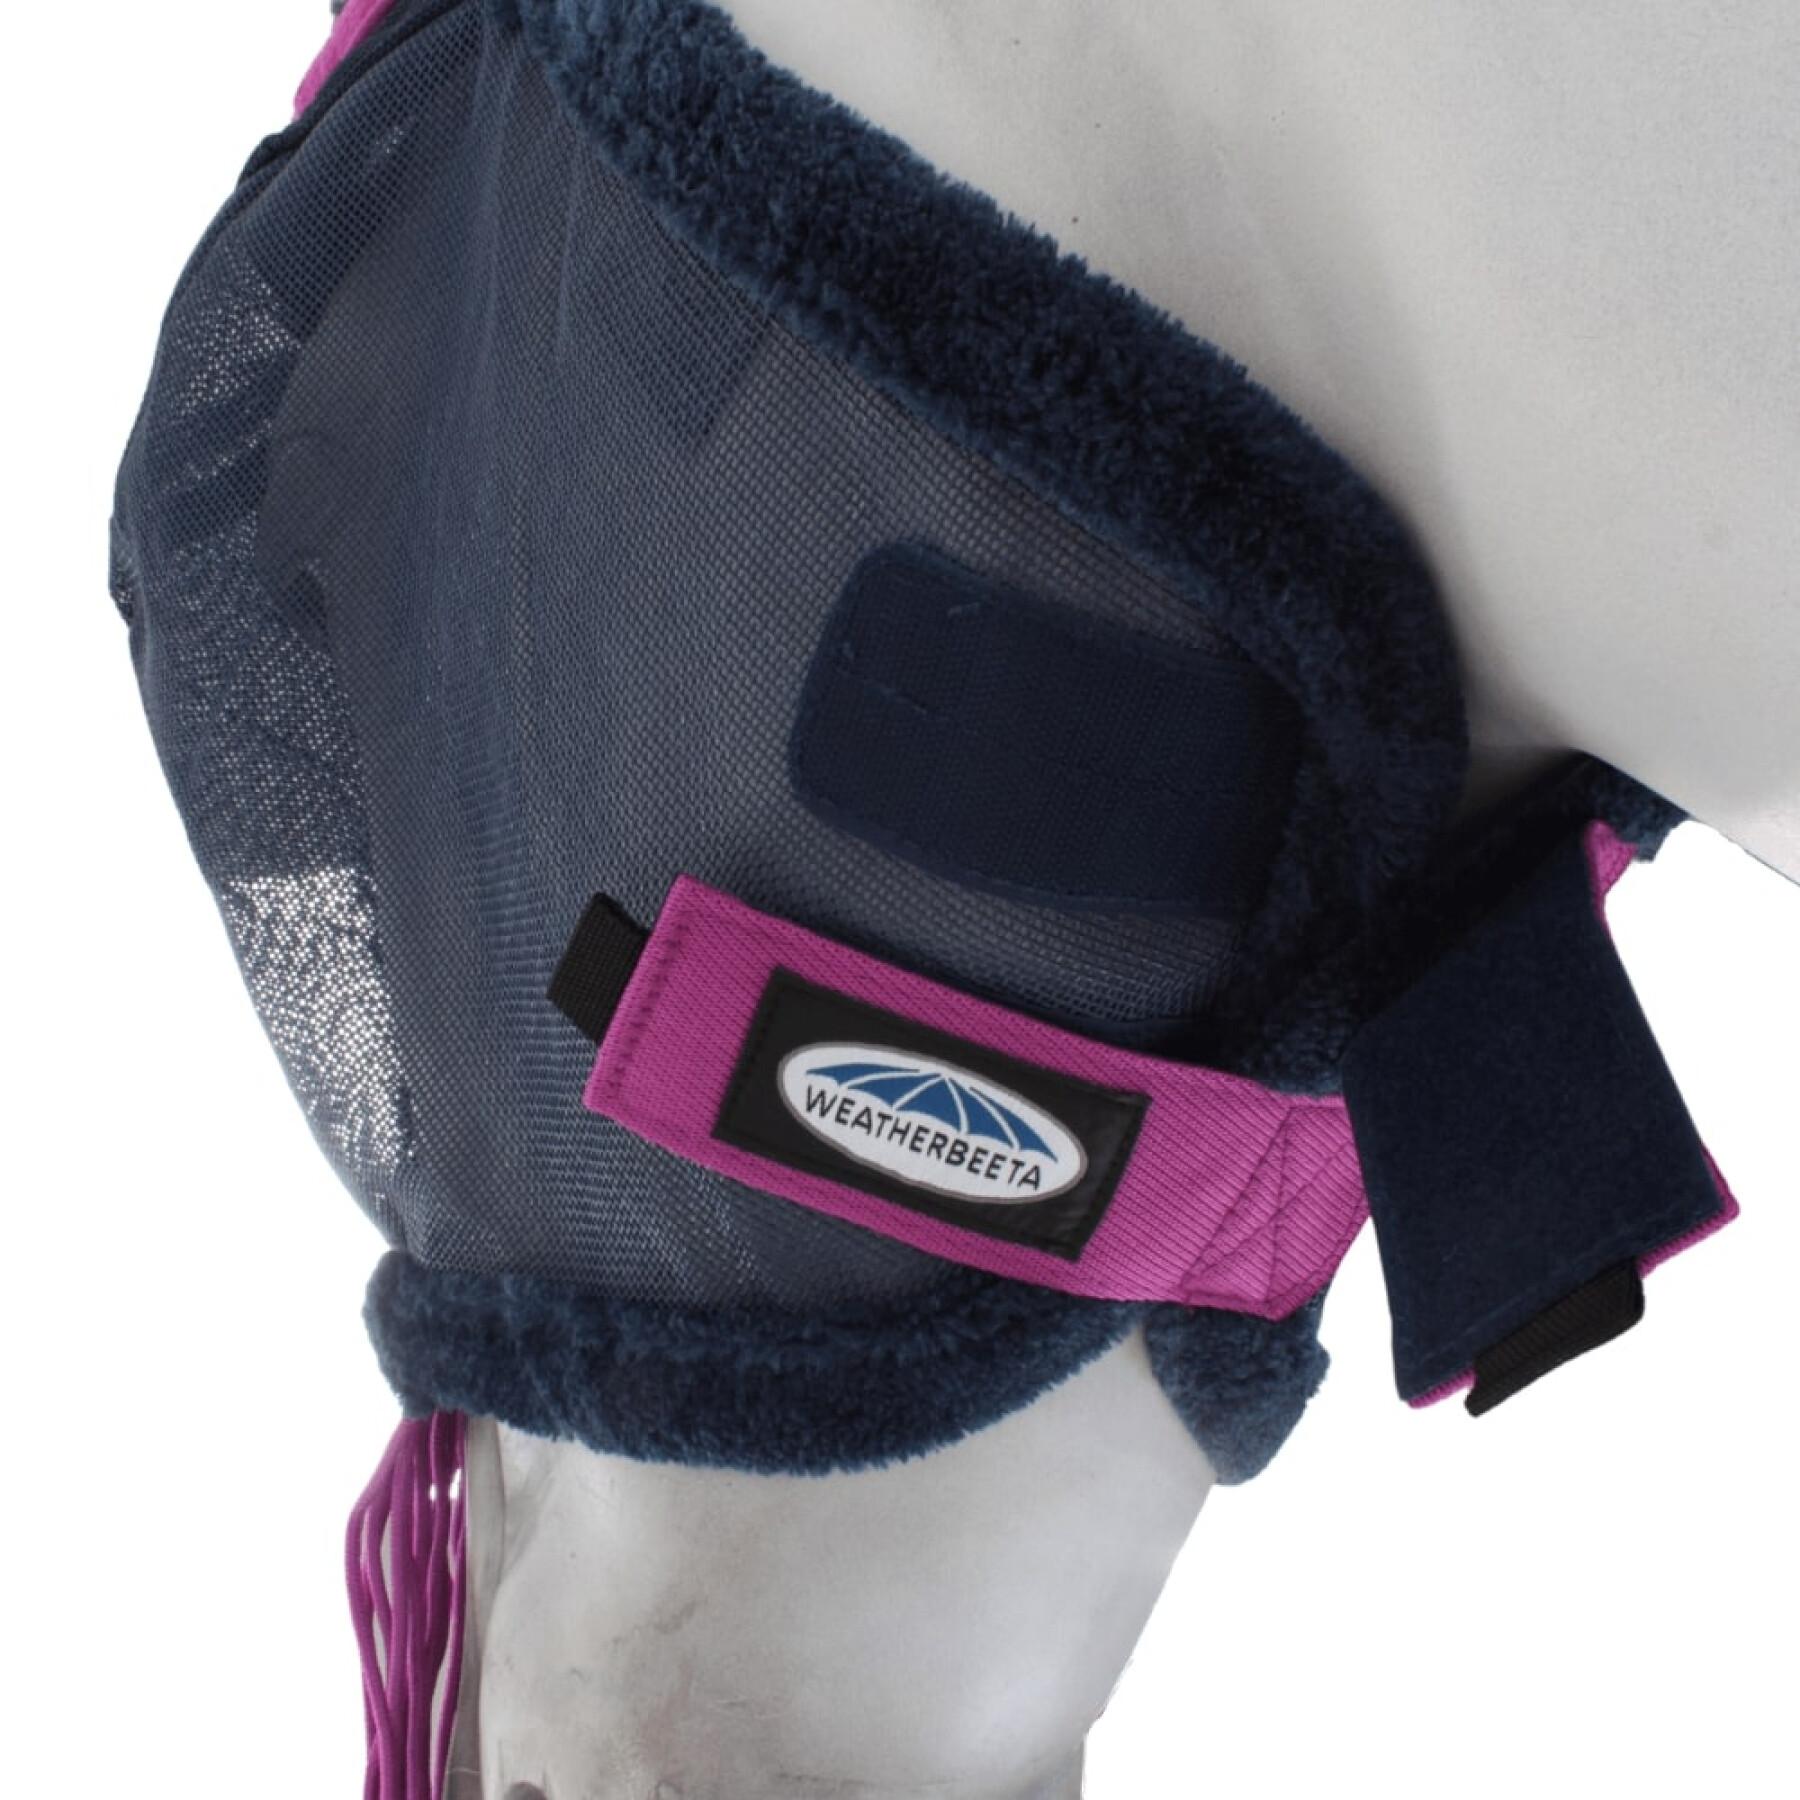 Maschera antimosche per cavalli in rete resistente con protezione per le orecchie e nappe Weatherbeeta Comfitec Deluxe